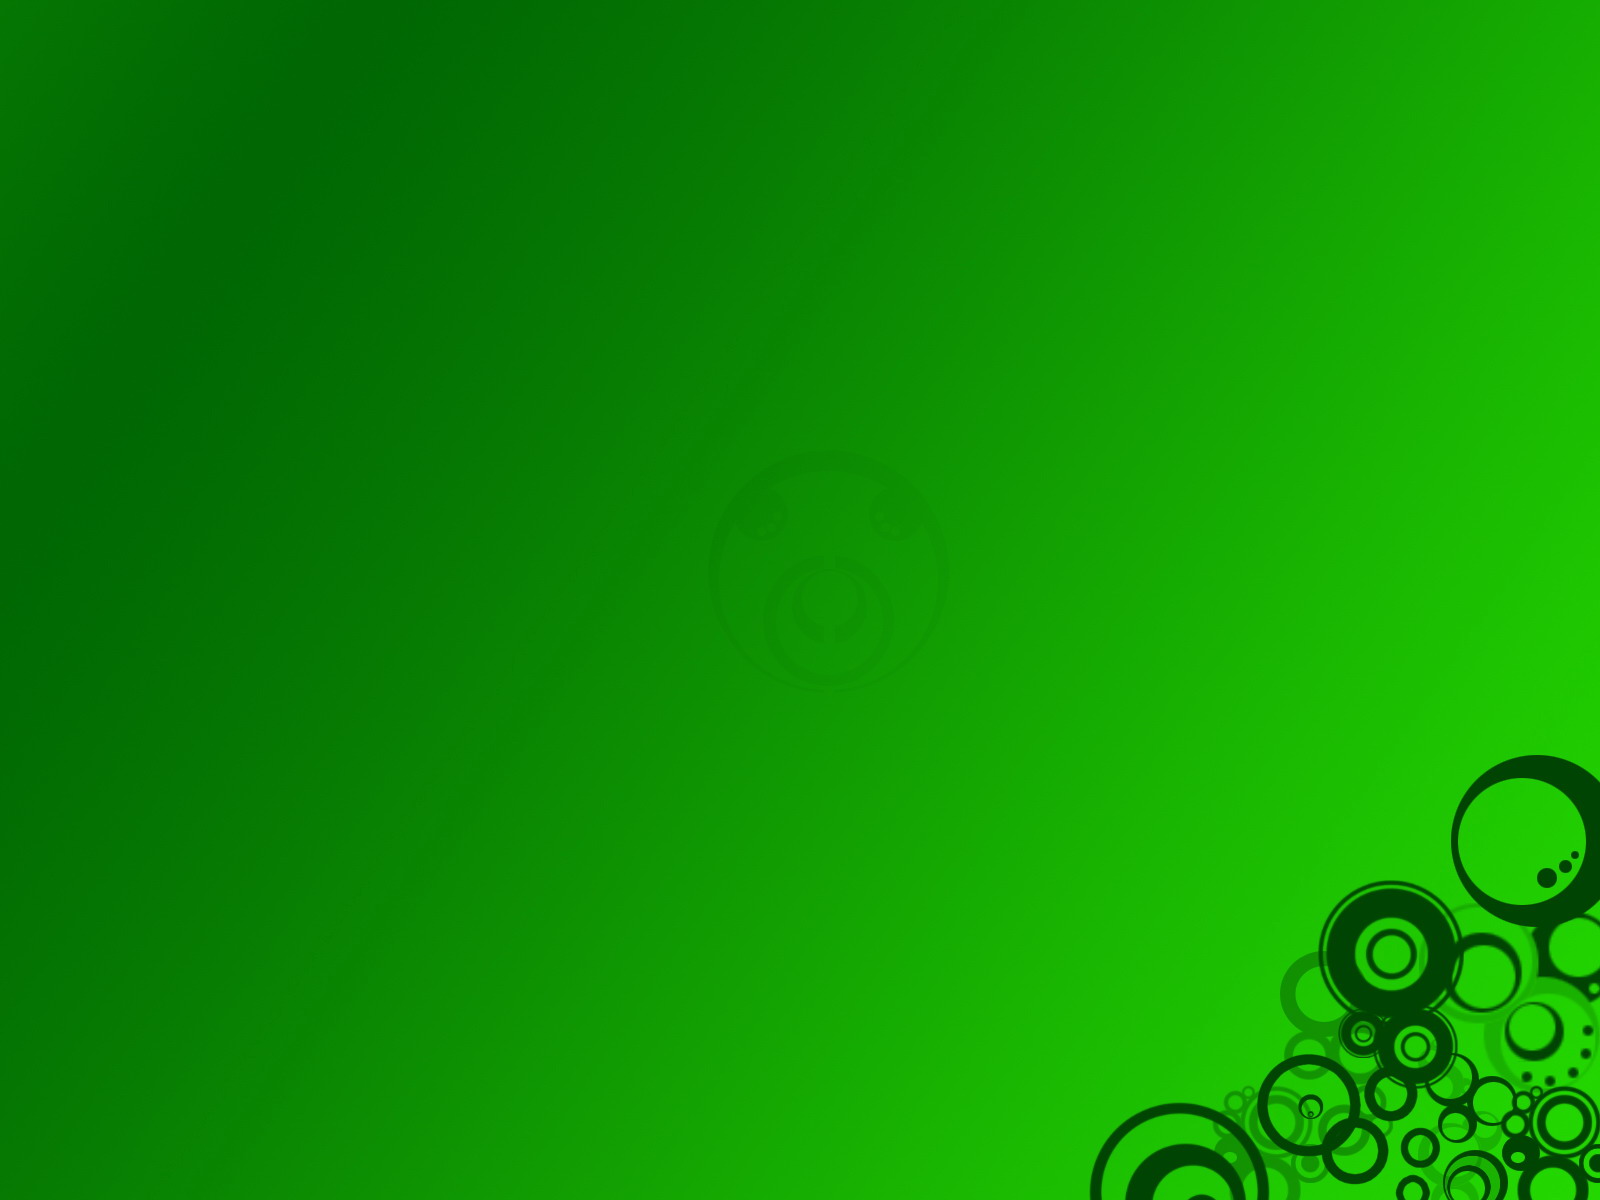 50+] Green Wallpapers Green Images - WallpaperSafari